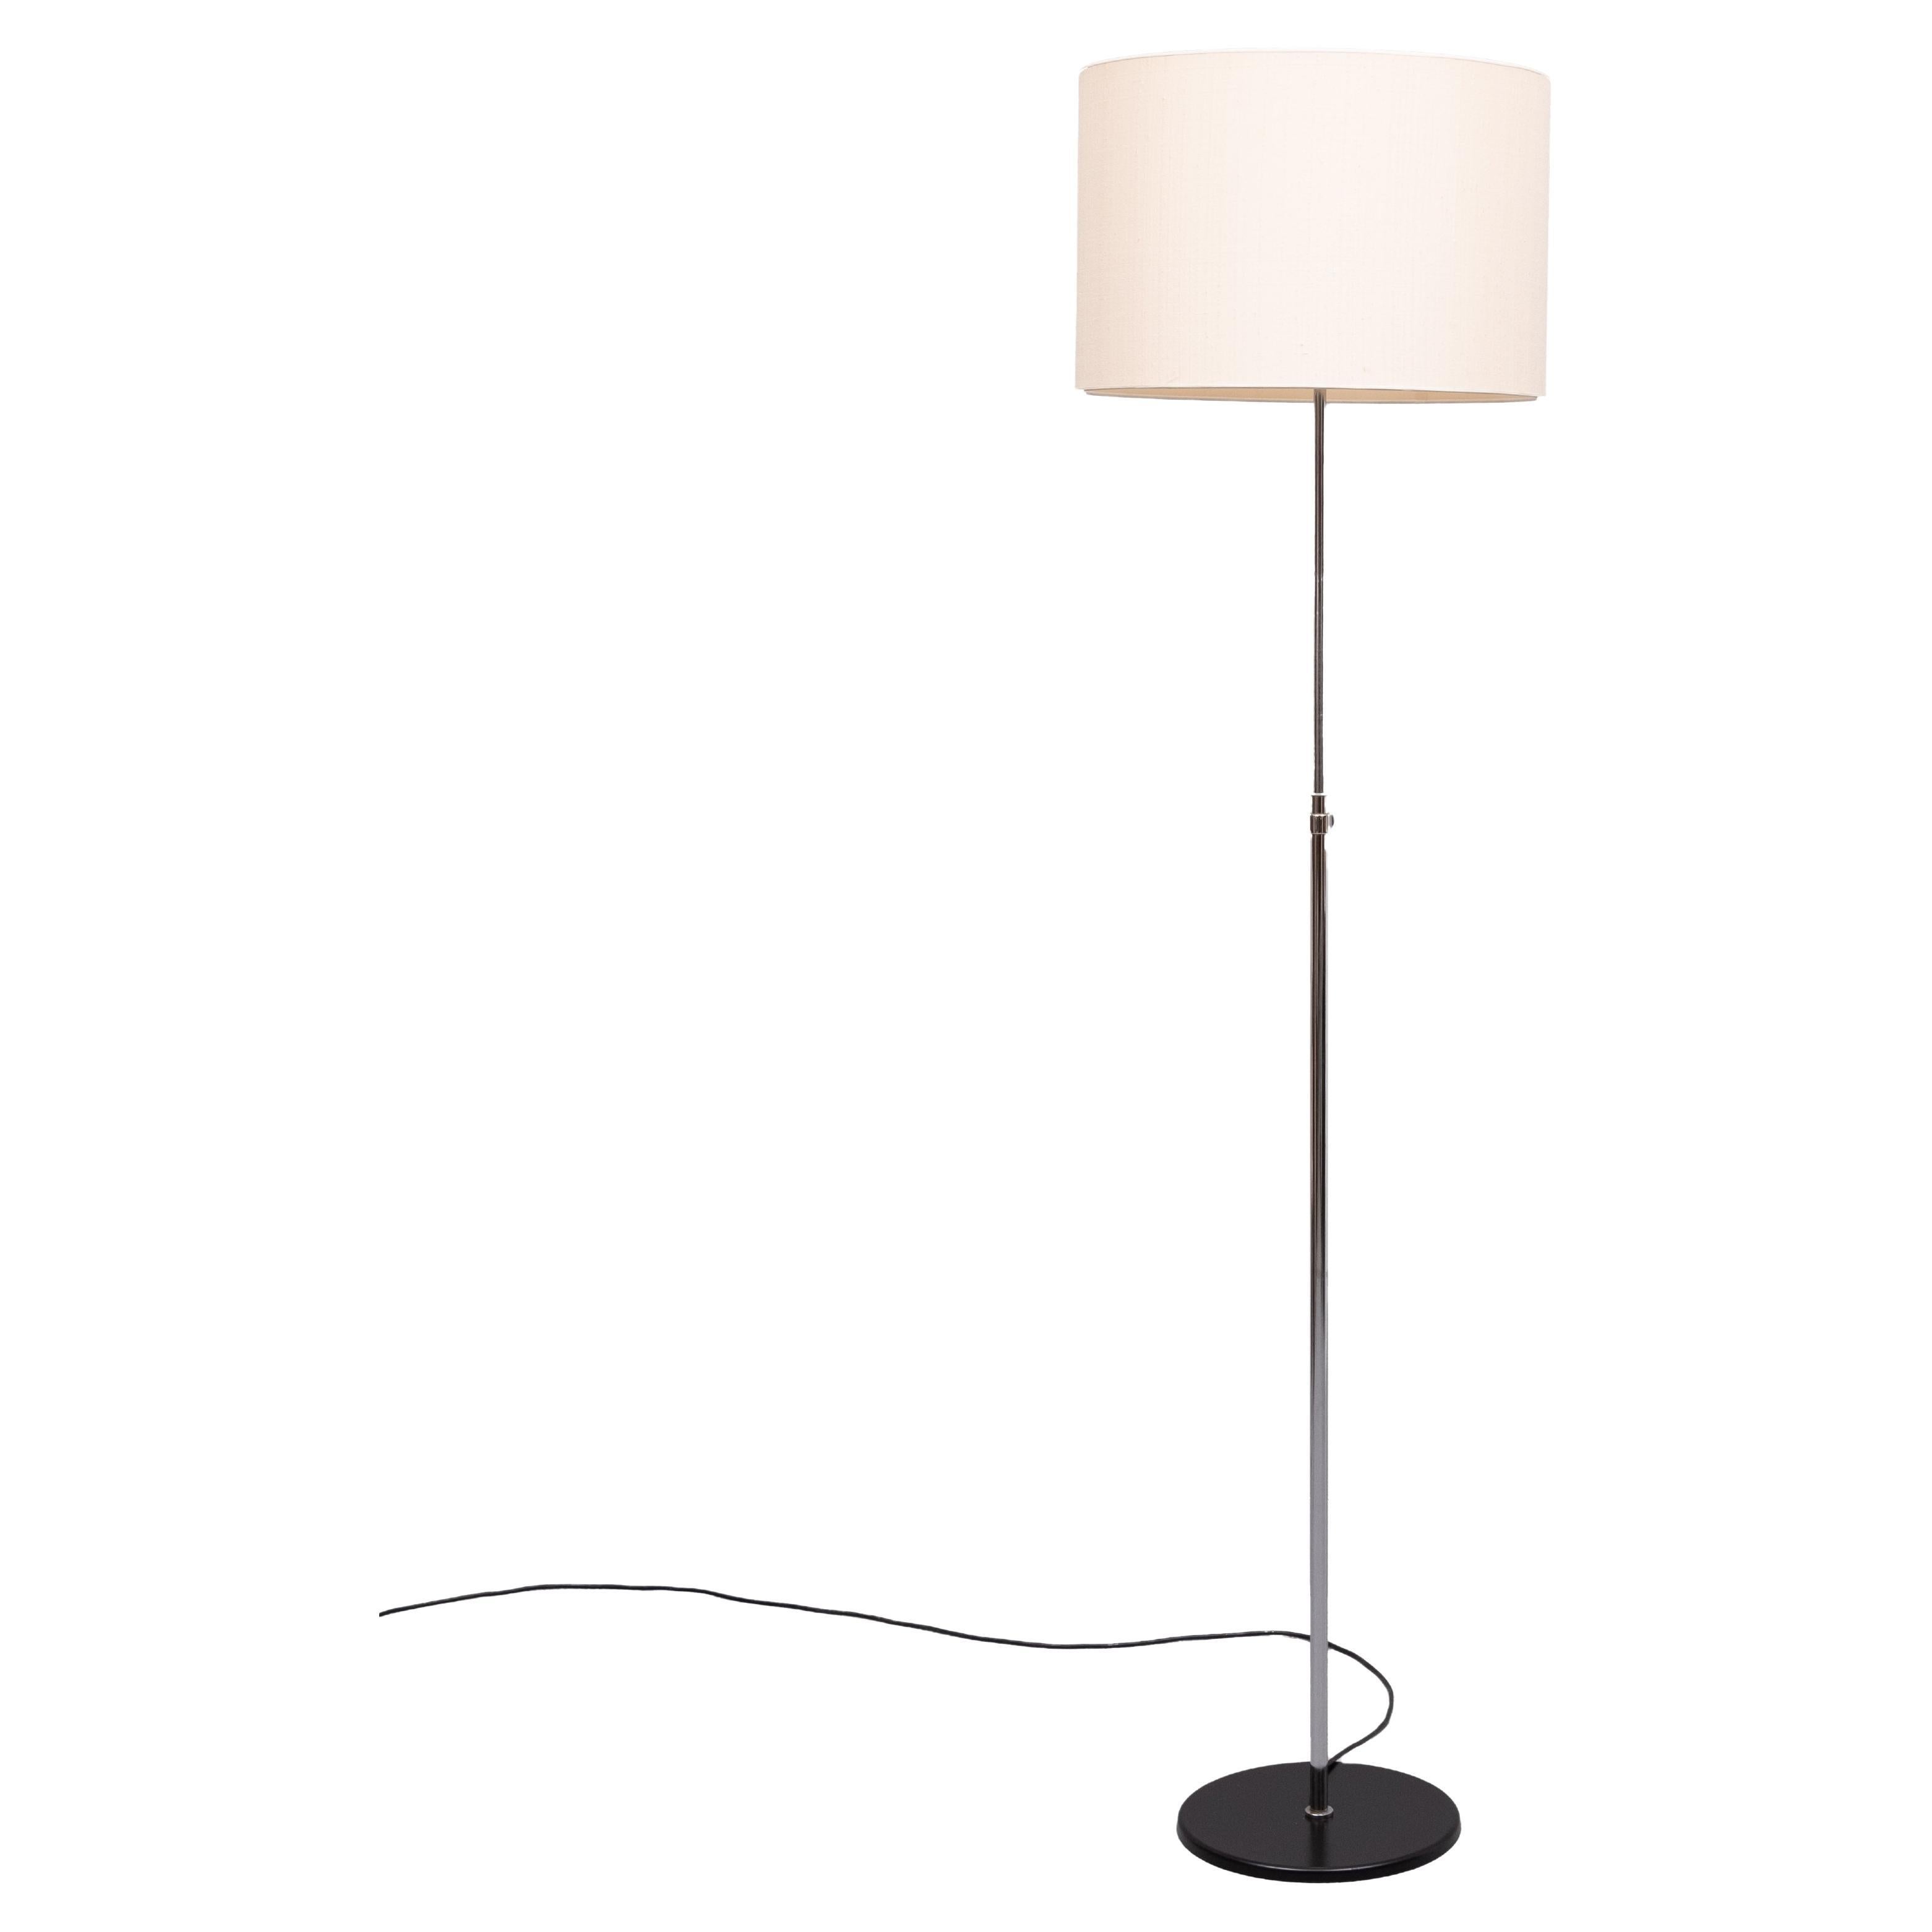 Staff  Leuchten  Adjustable floor lamp   1960s Germany  For Sale